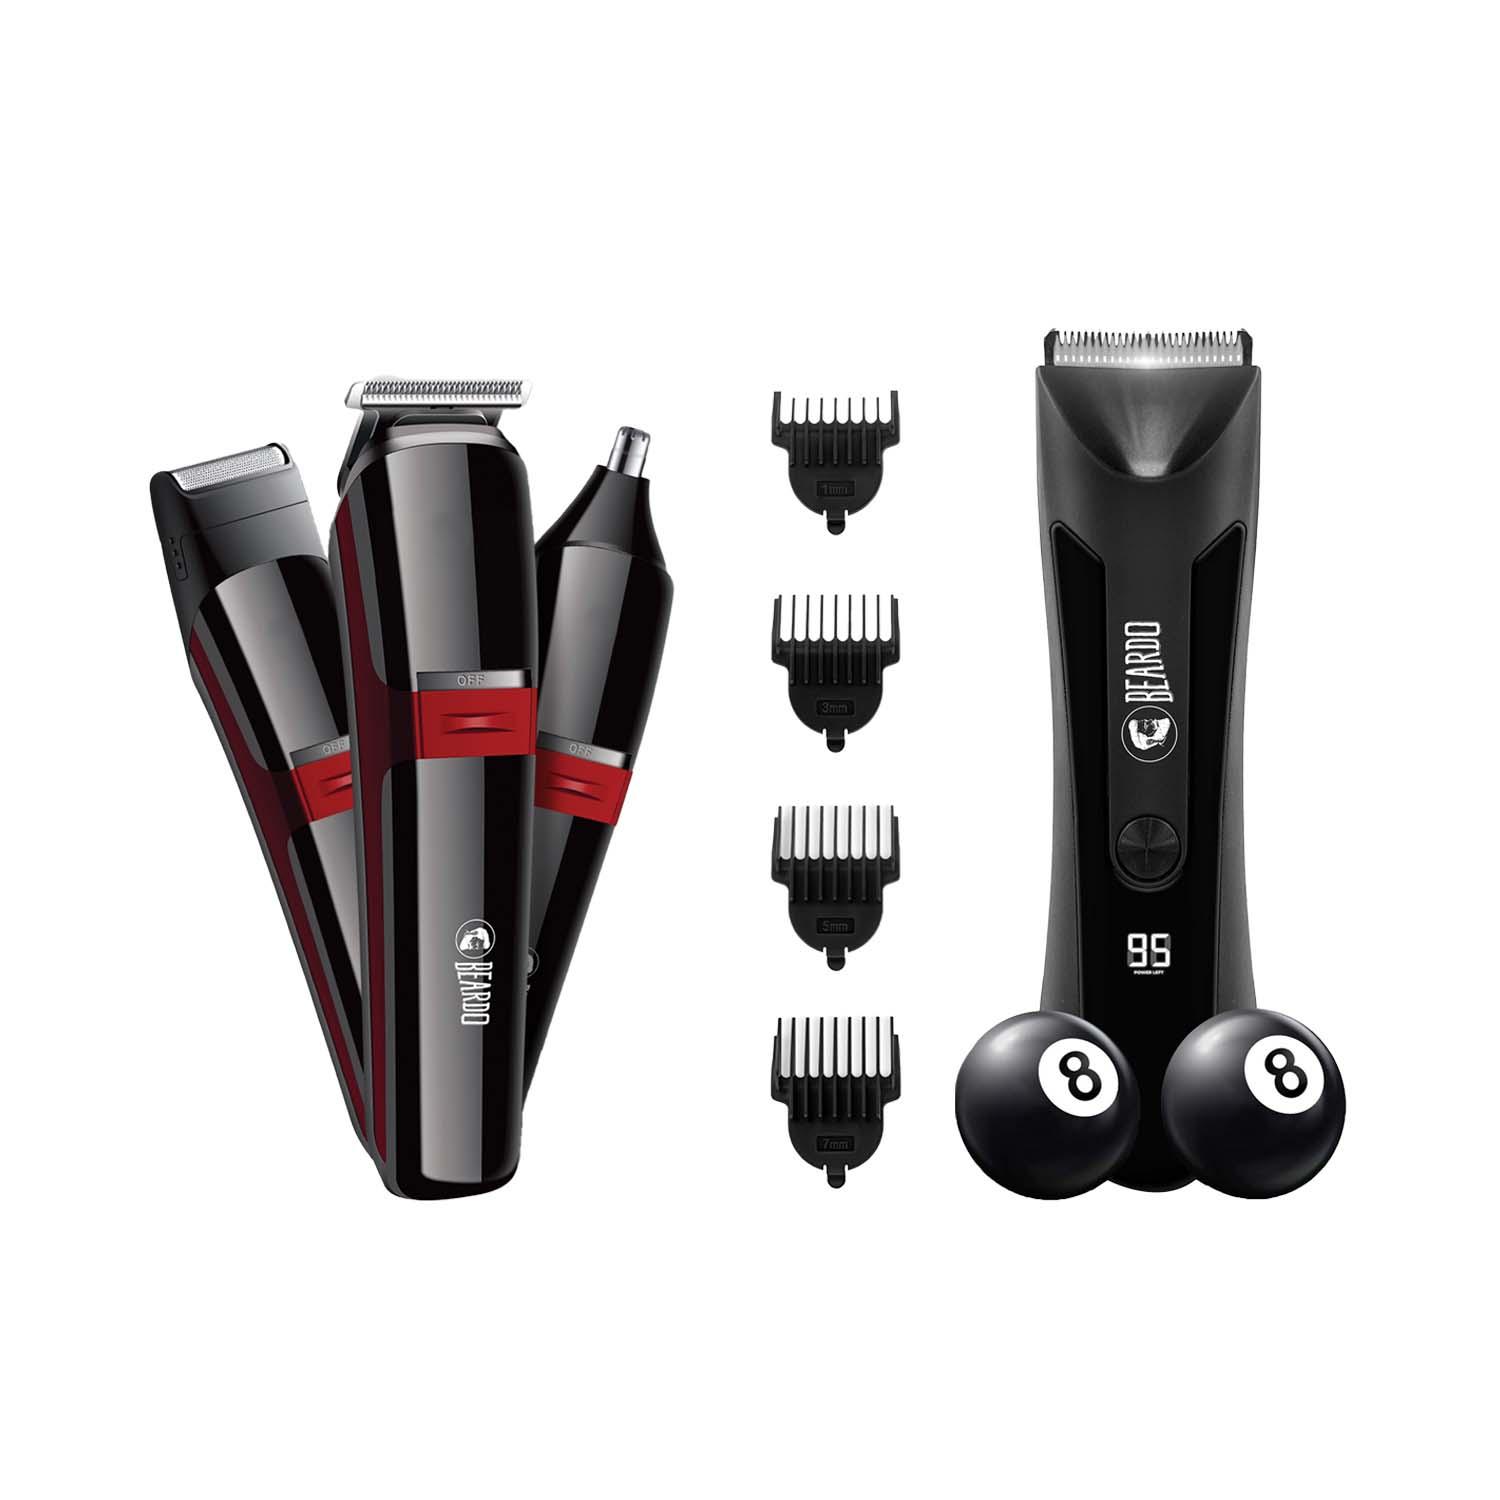 Beardo APE-X 3-In-1 Multipurpose Trimmer - Black & Red & Incredi-Ball Trimmer - Black Combo